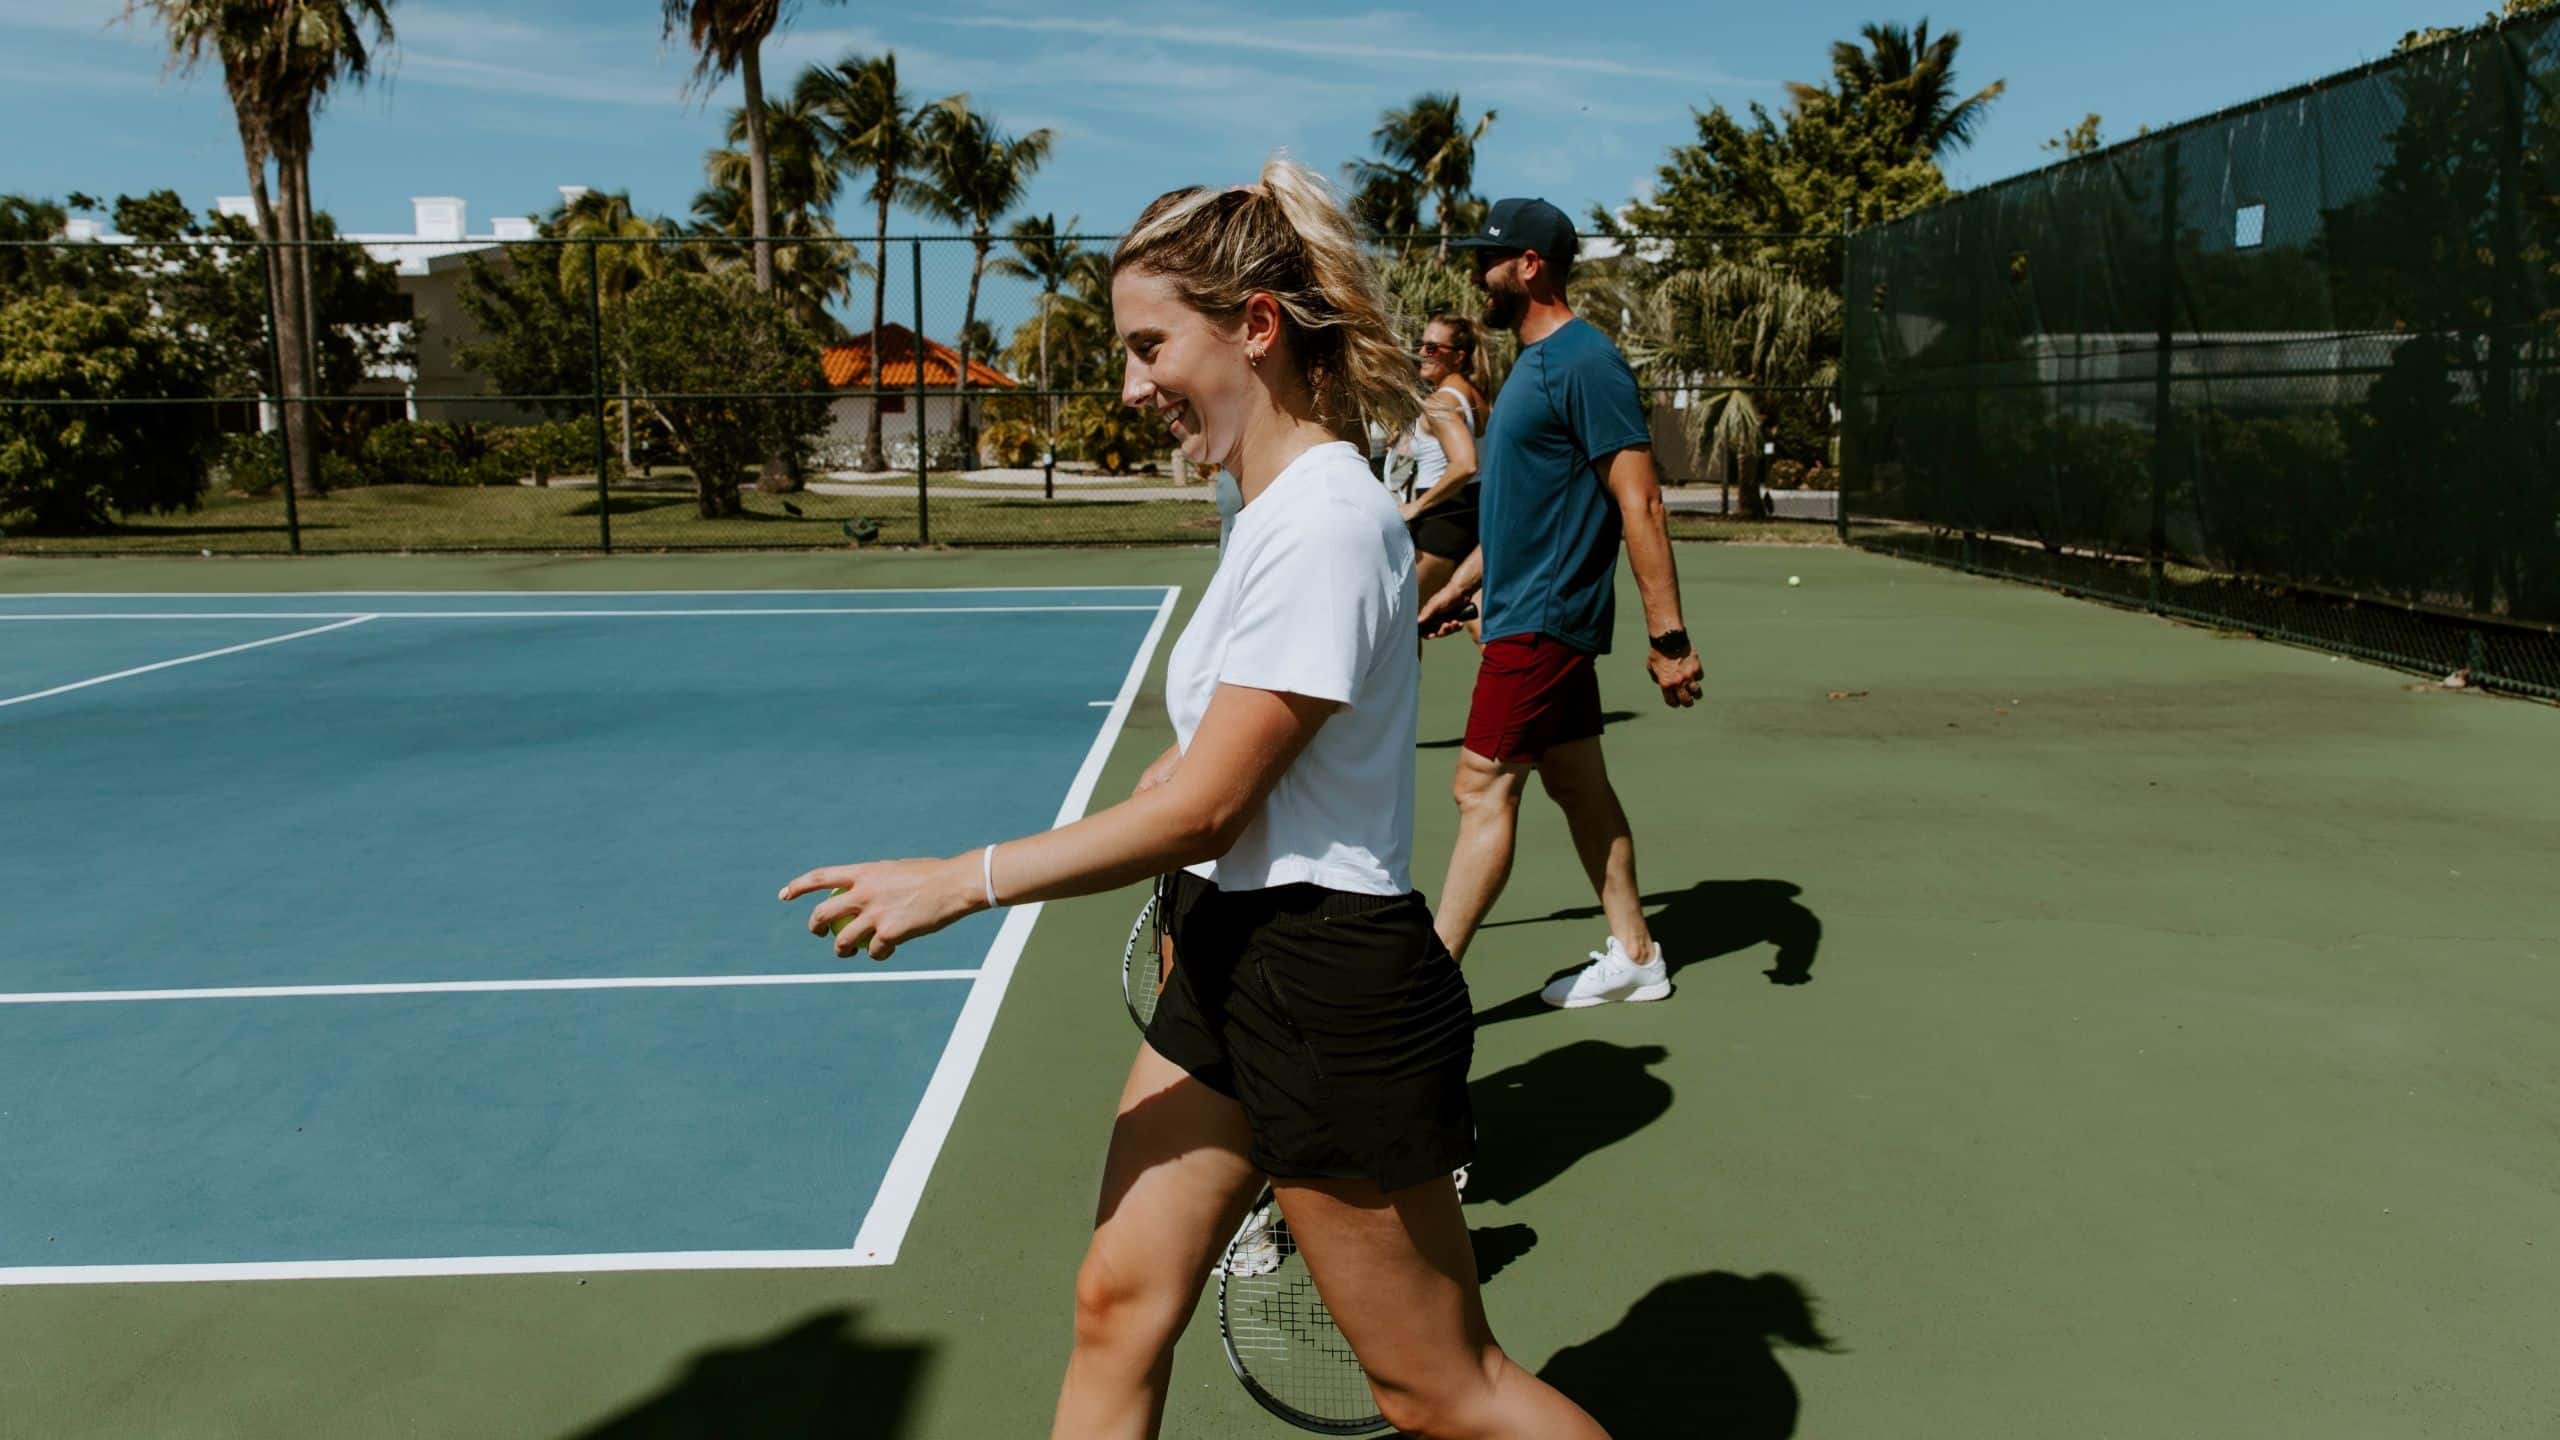 Hyatt Regency Grand Reserve Puerto Rico Girl Walks Onto Tennis Court